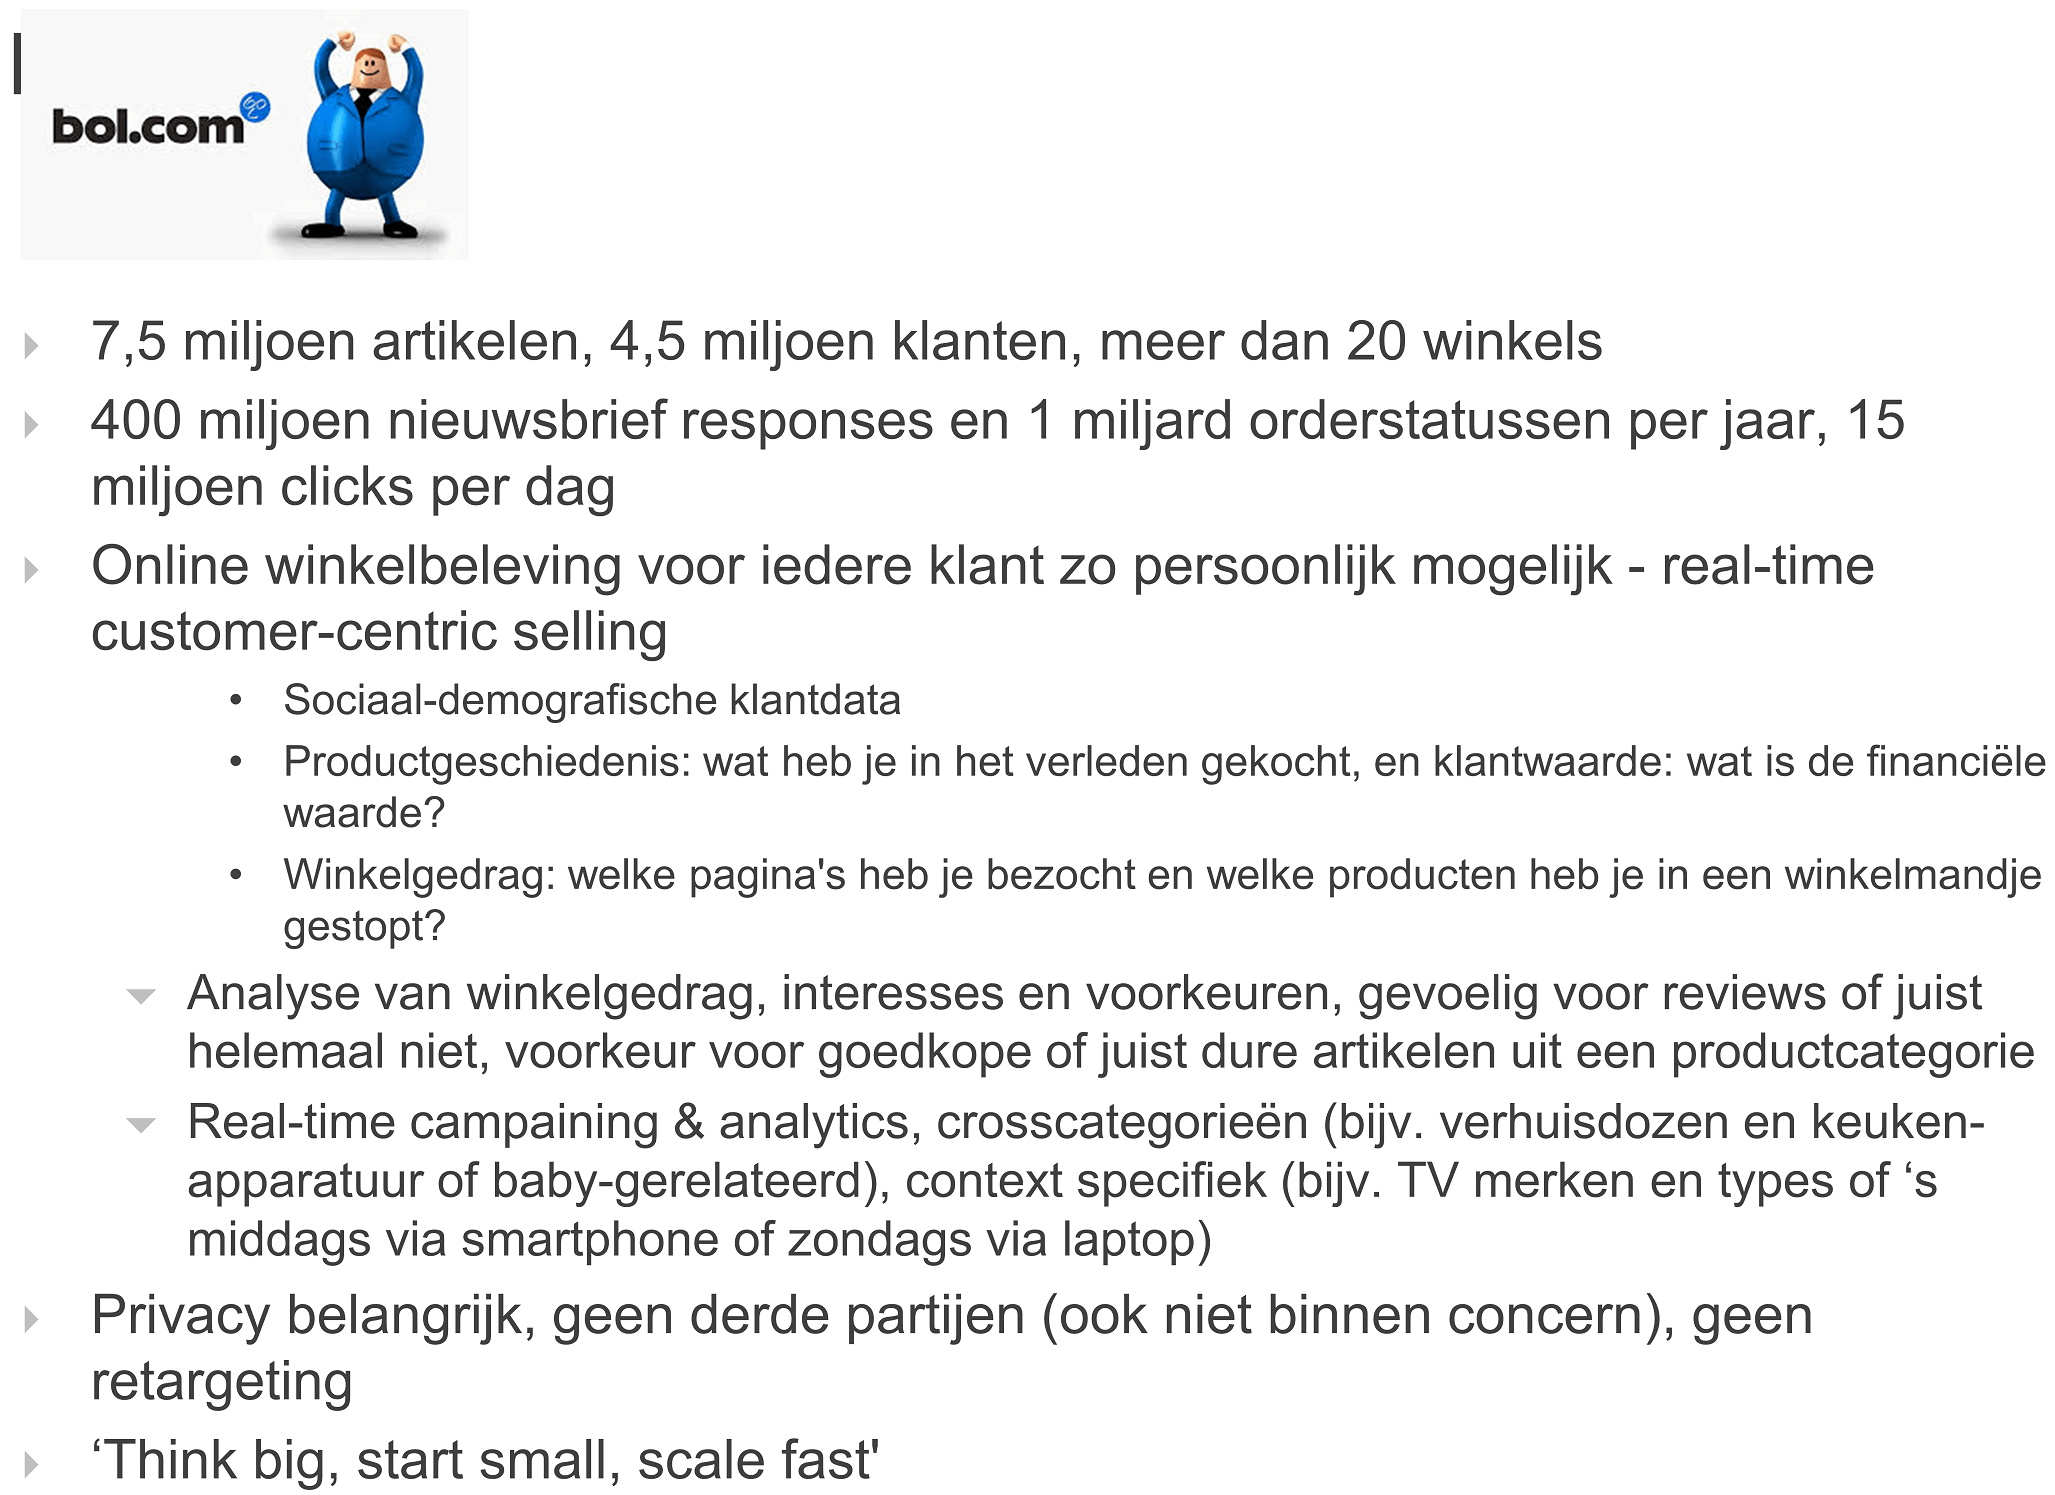 In Nederland is Bol.com daar een goed voorbeeld van.